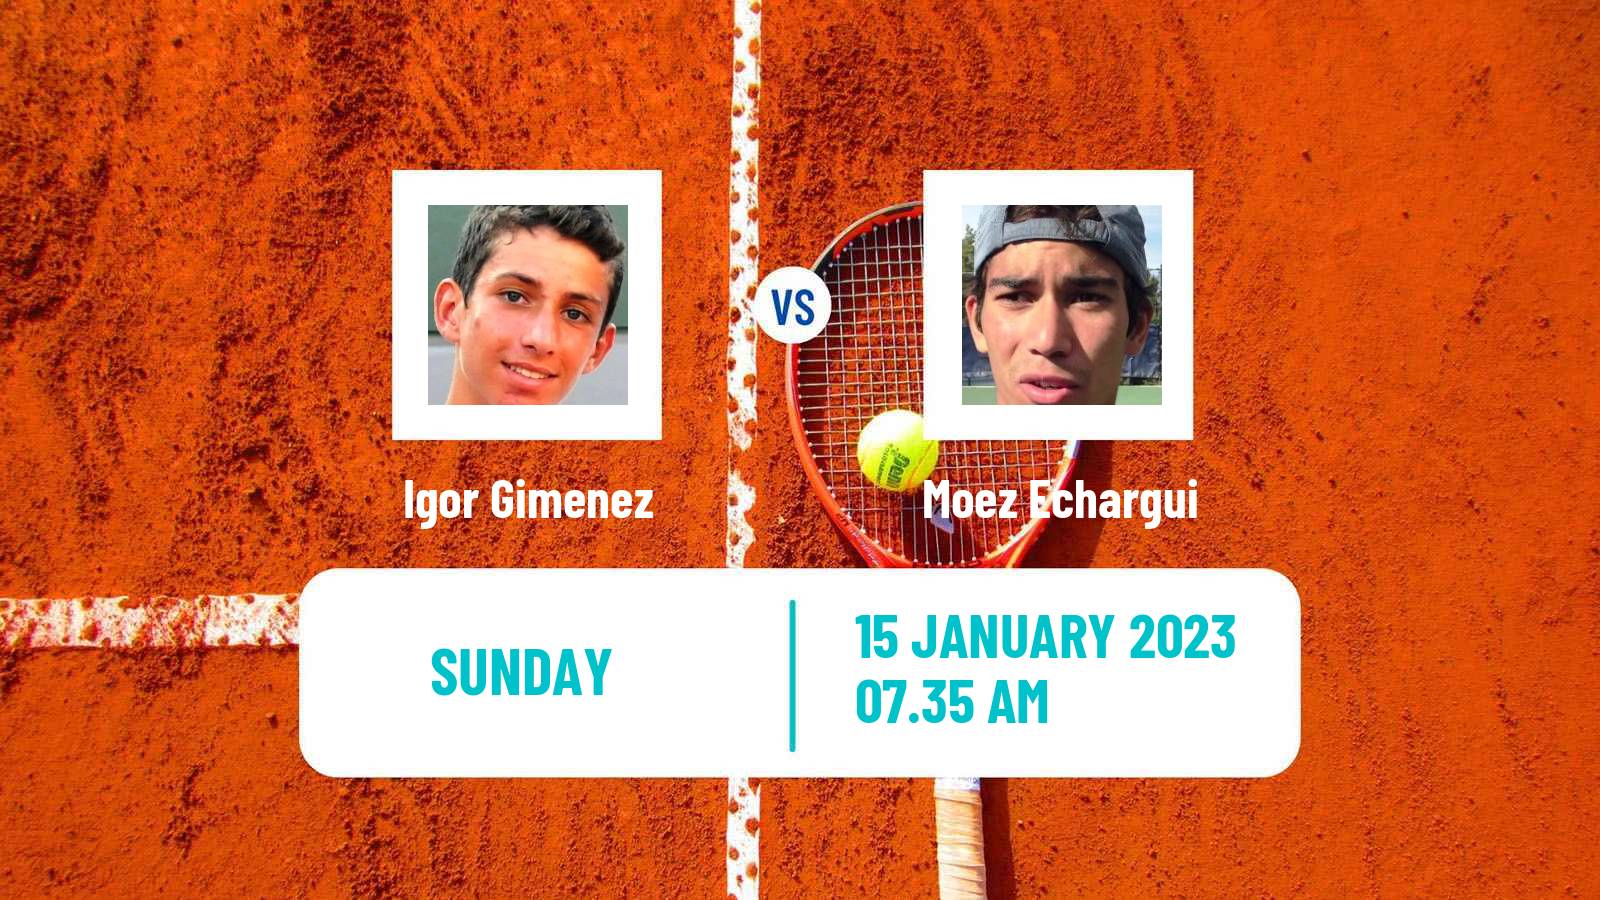 Tennis ATP Challenger Igor Gimenez - Moez Echargui